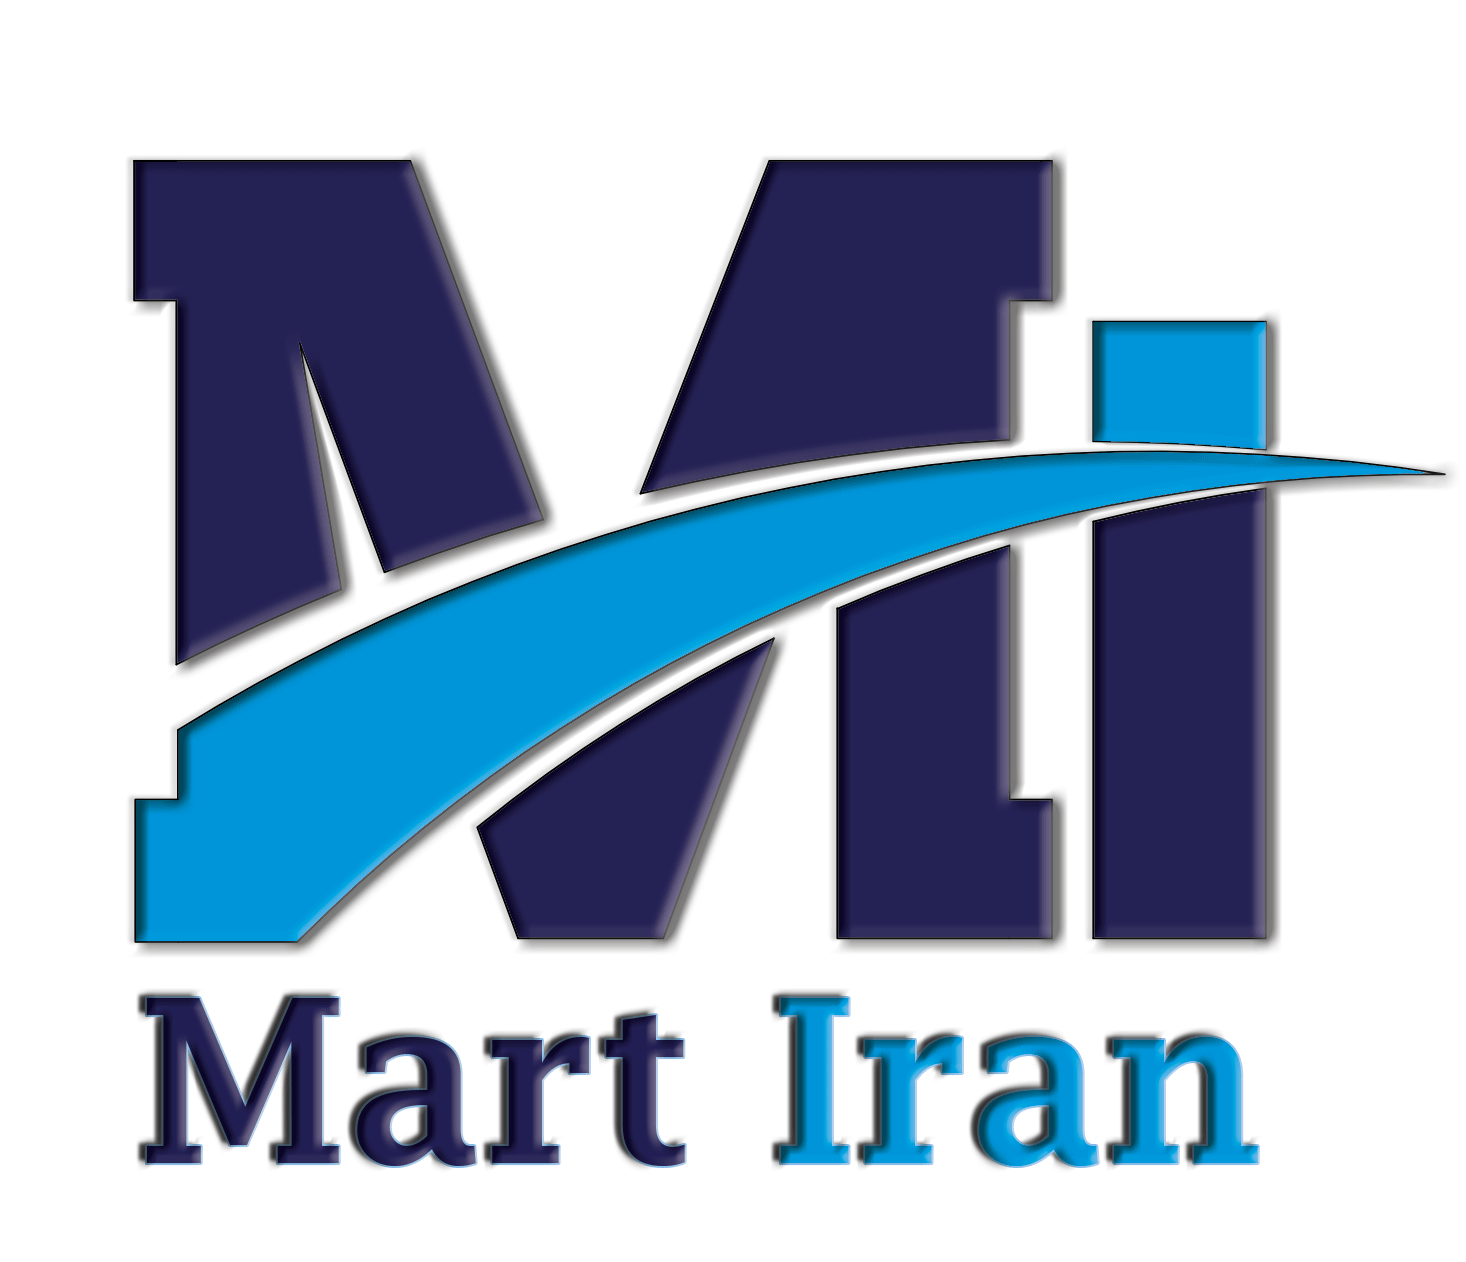 Mart Iran 